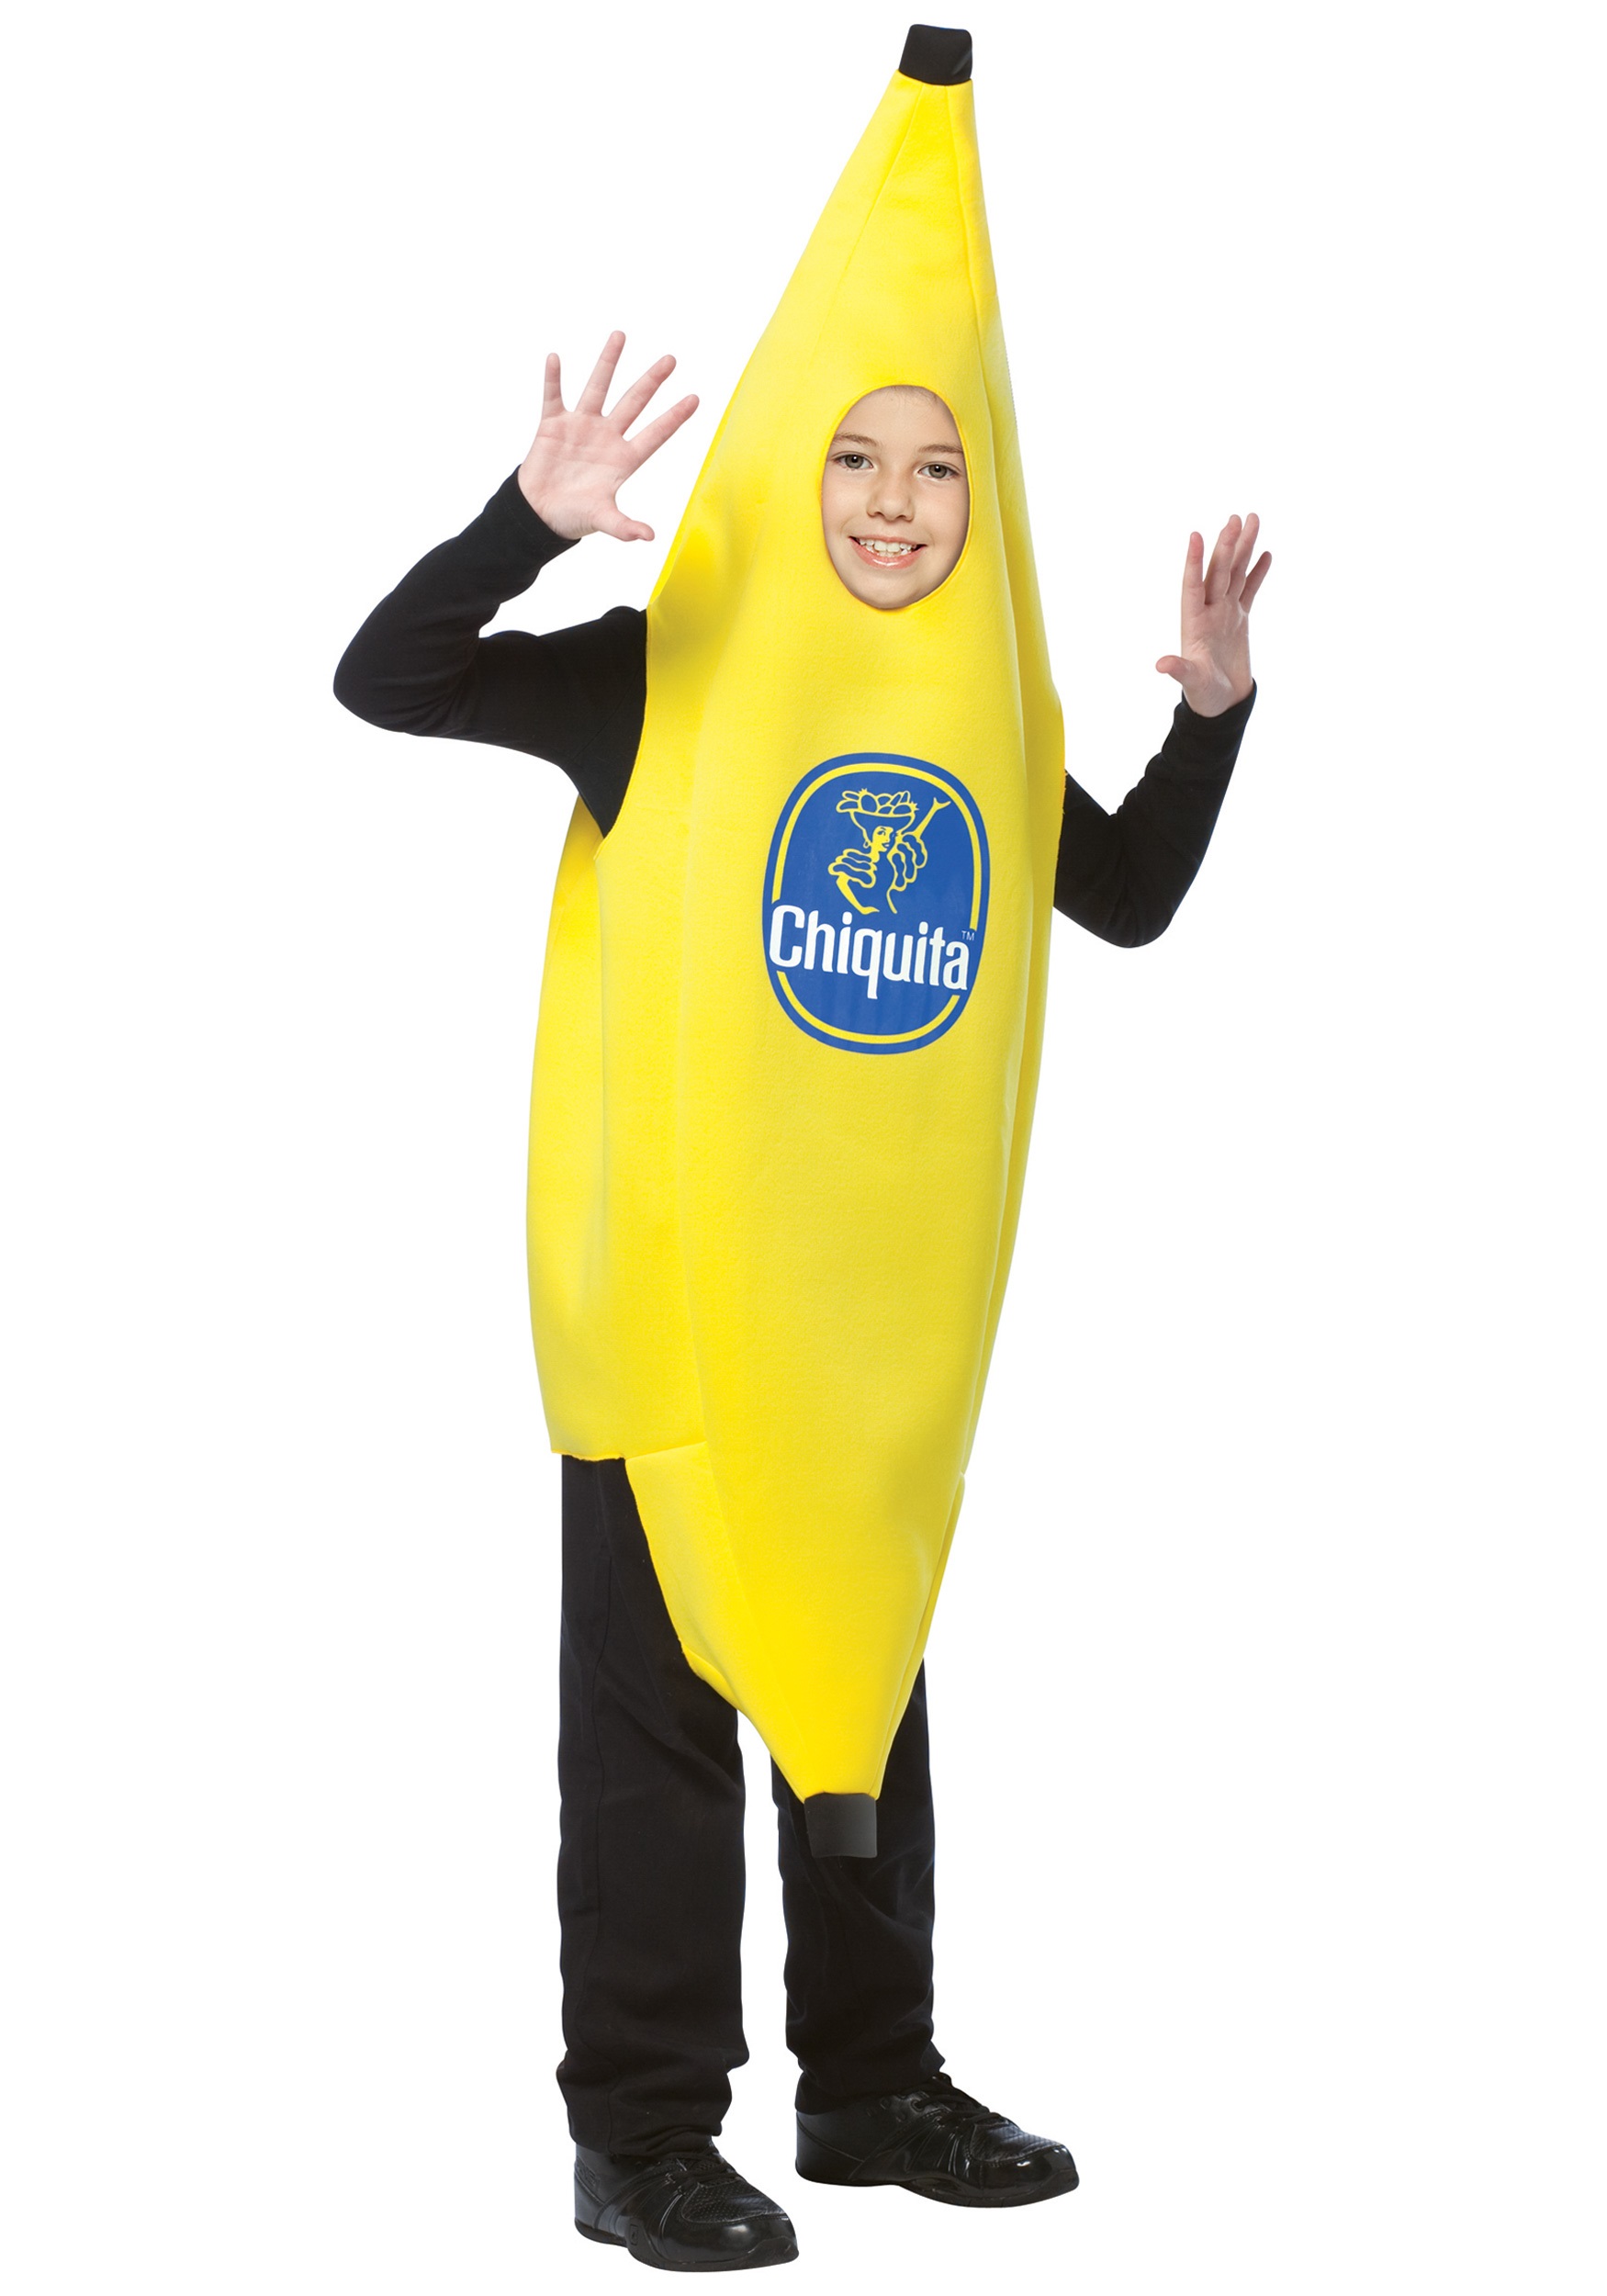 Child Chiquita Banana Costume - Halloween Costume Ideas 2022.